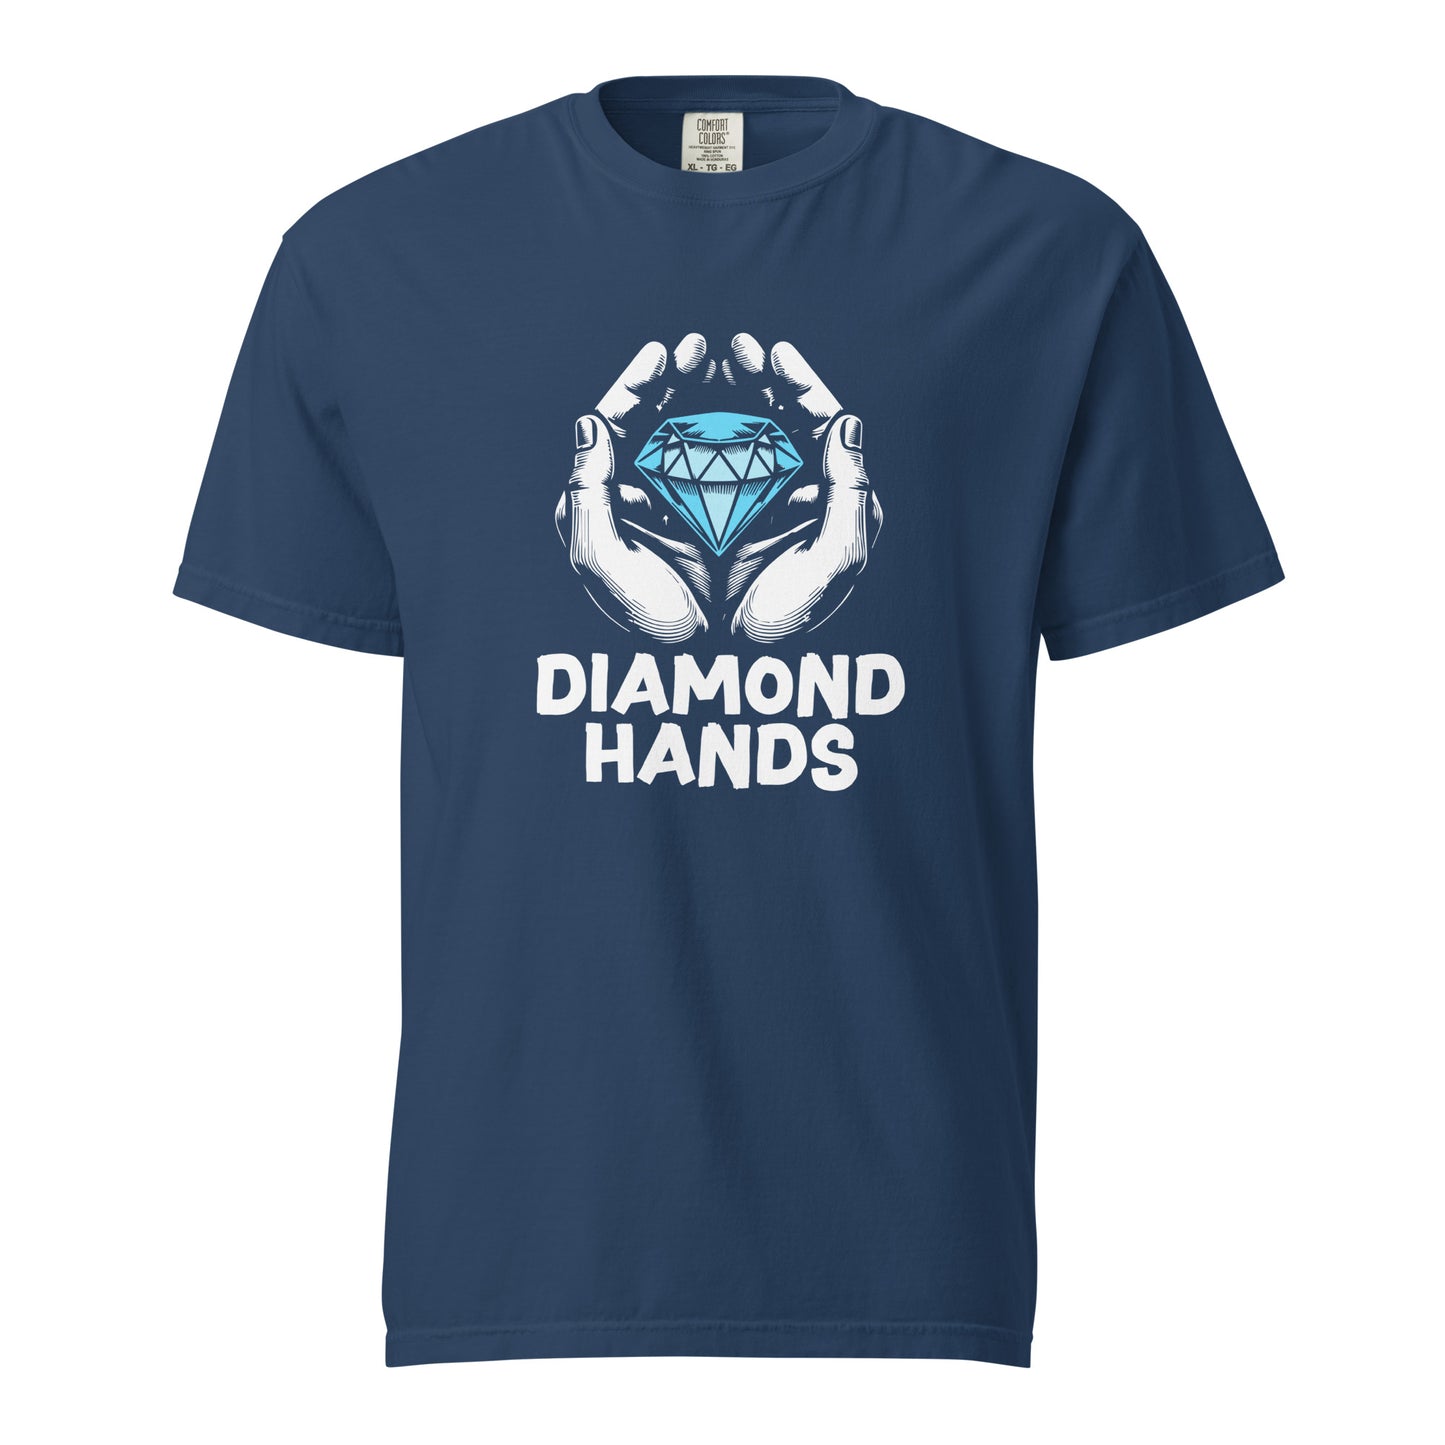 Diamond Hands heavyweight t-shirt